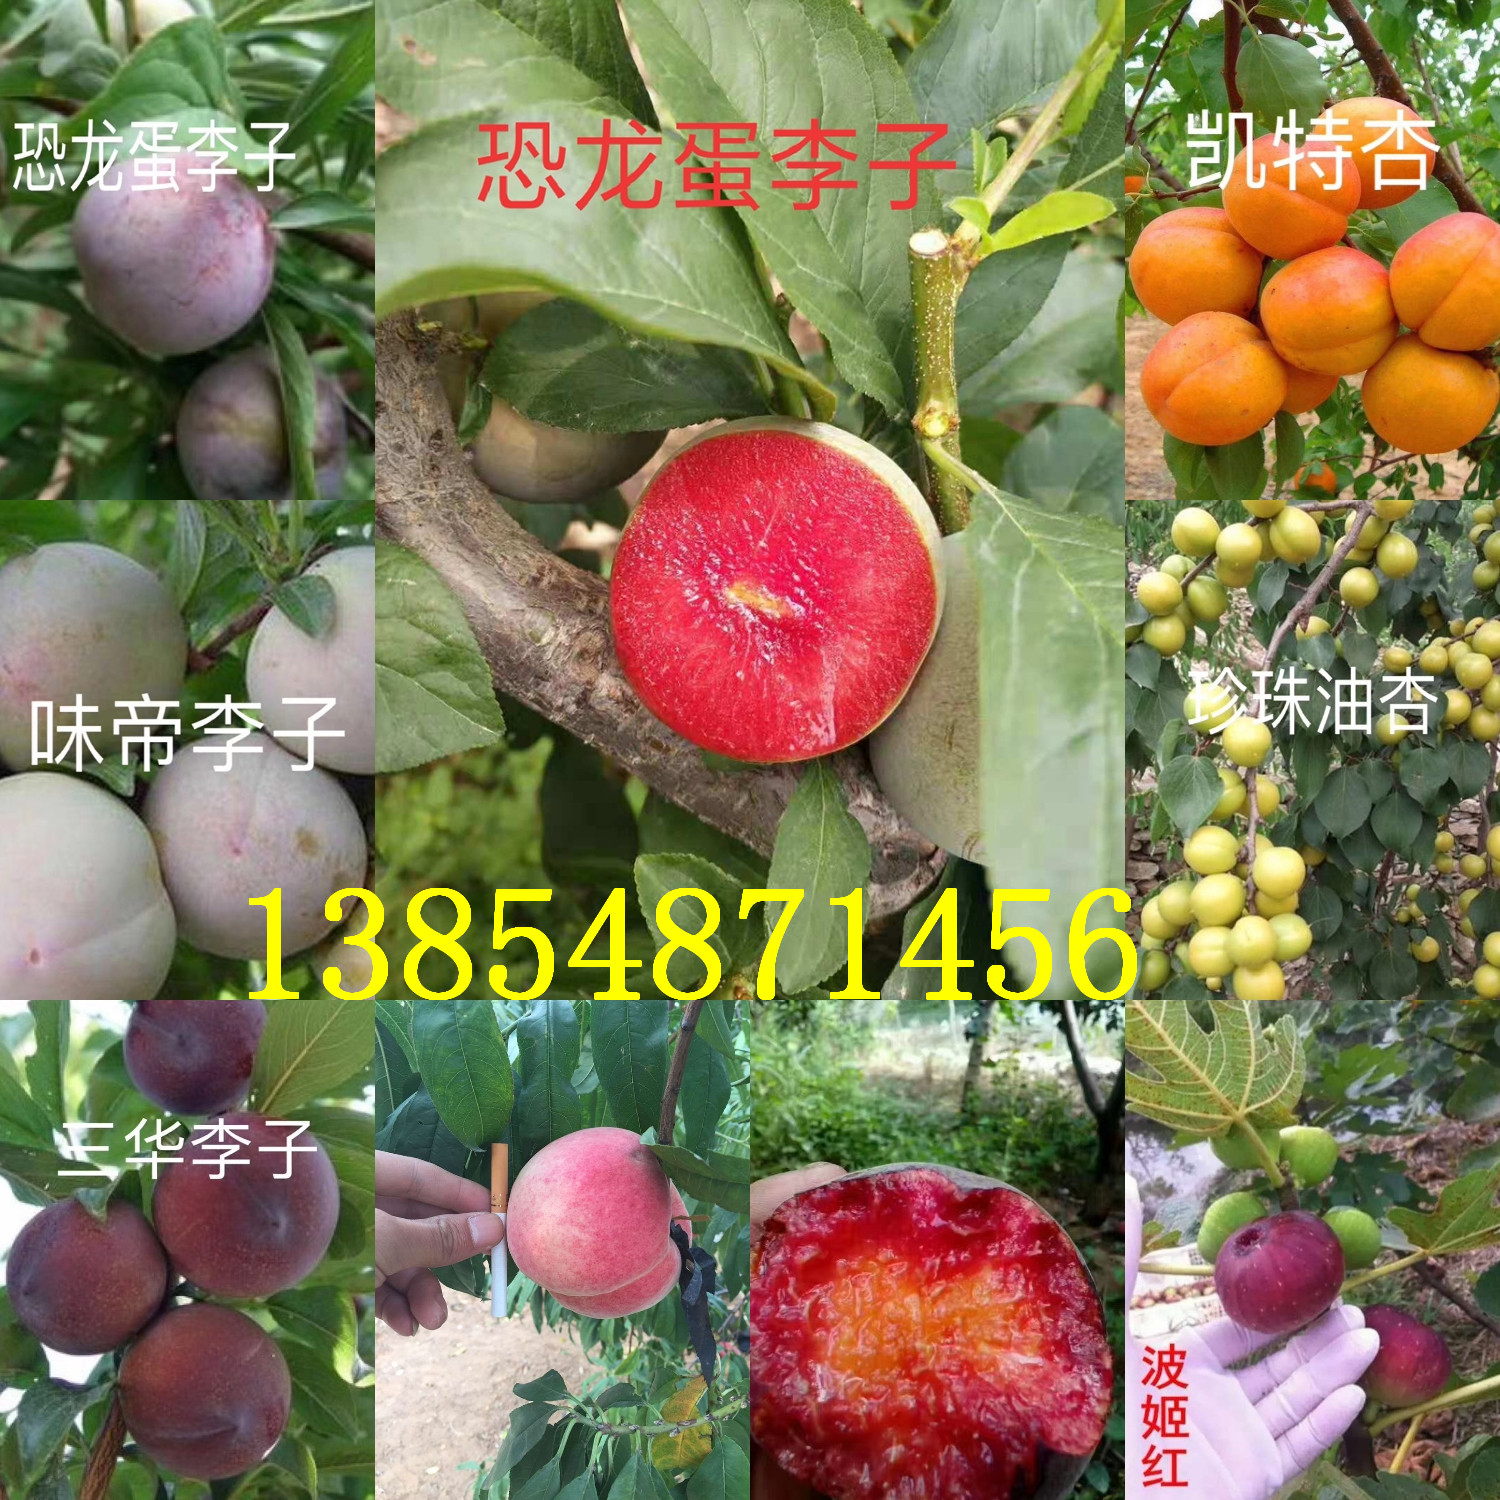 新疆克拉玛依红花椒树苗基地卖啥价格、果树苗哪里有售